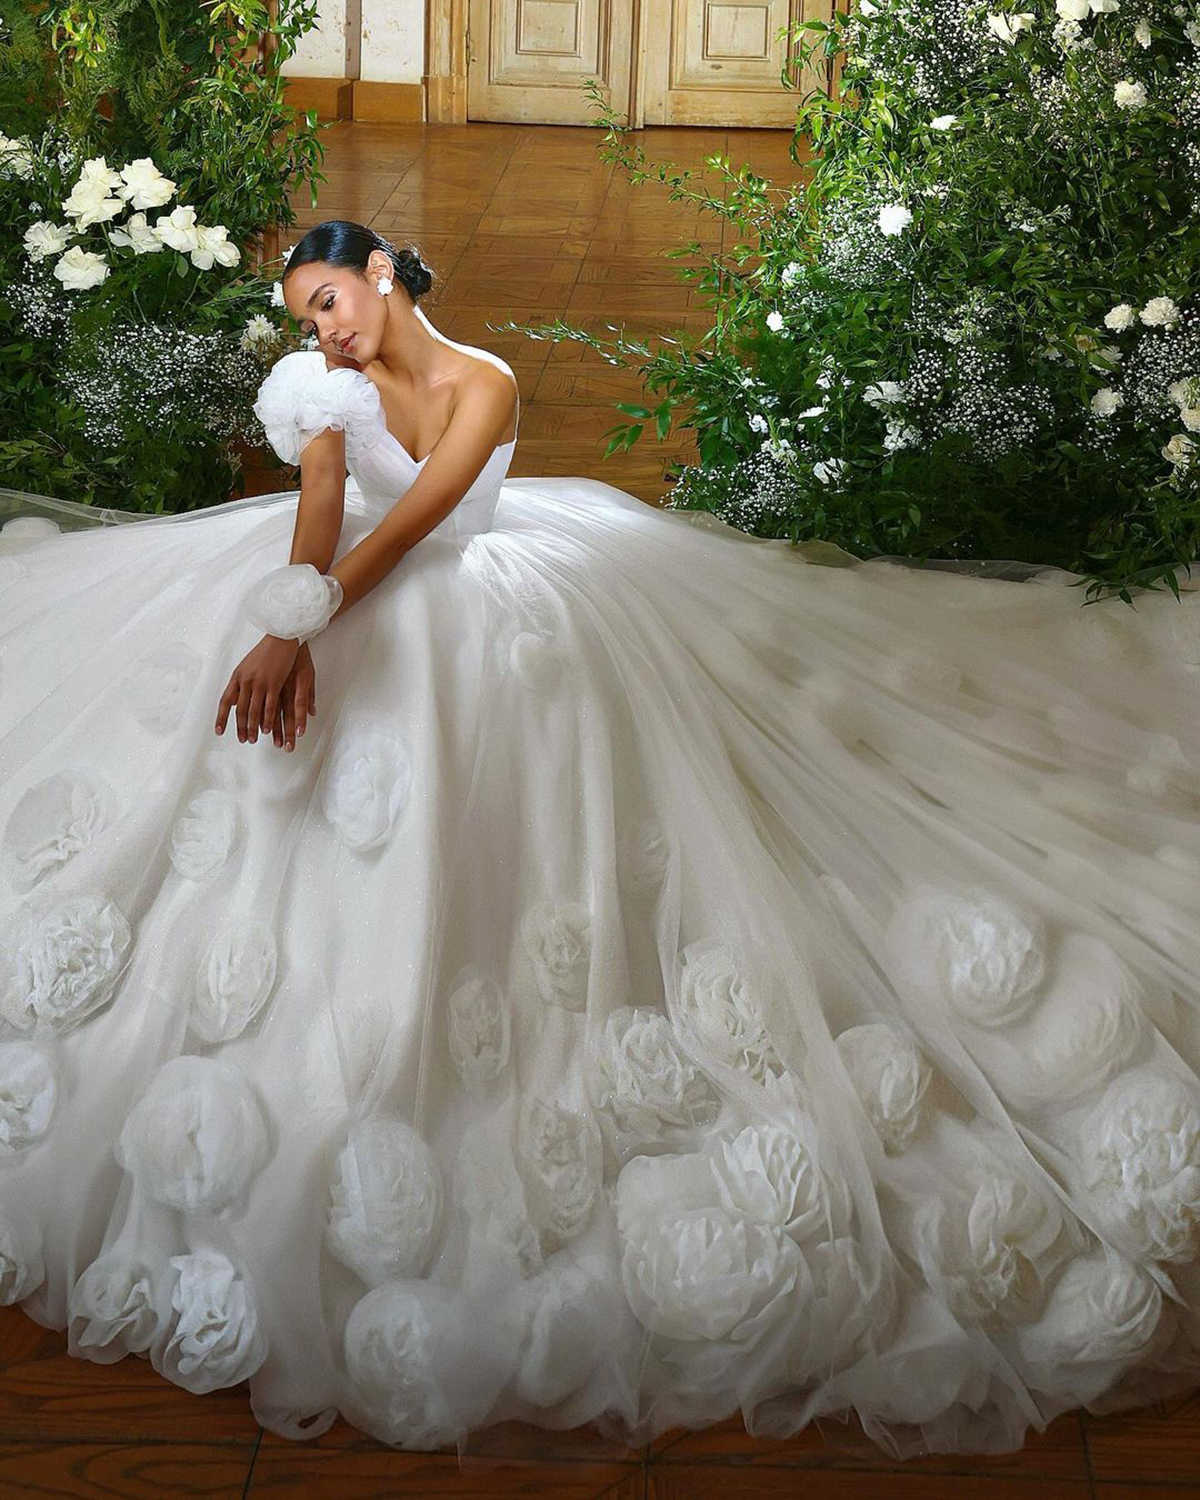 Robes de mariée de robe de bal romantique 3d Appliques florales Décoration Tulle chérie Backless Sweep Train Made Bridal Plus Vestidos de Novia sur mesure